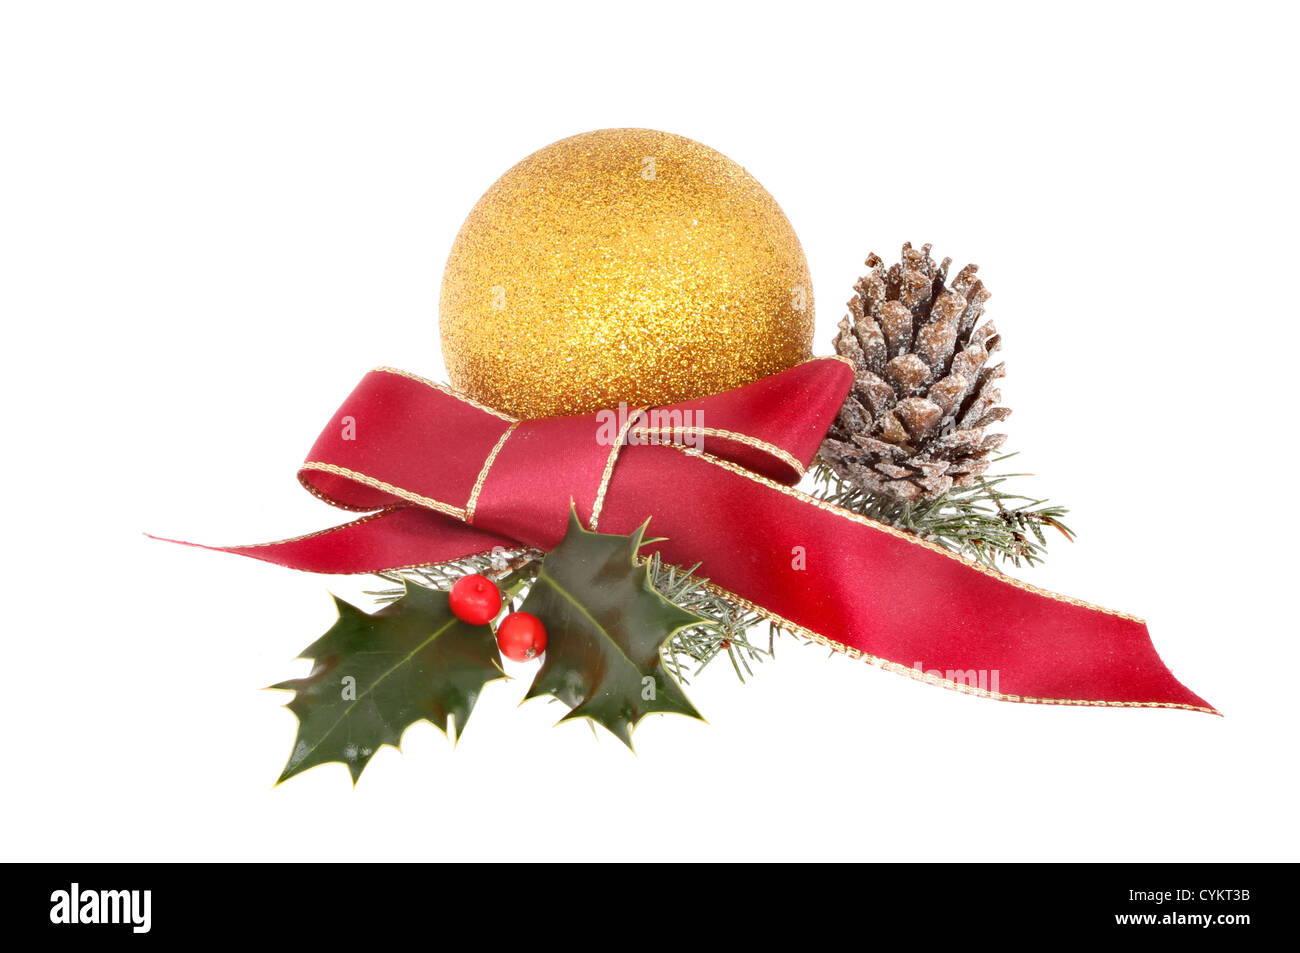 Decoración de Navidad de deformación de la cinta roja de adornos de oro holly y cono de pino cubierto de nieve Foto de stock